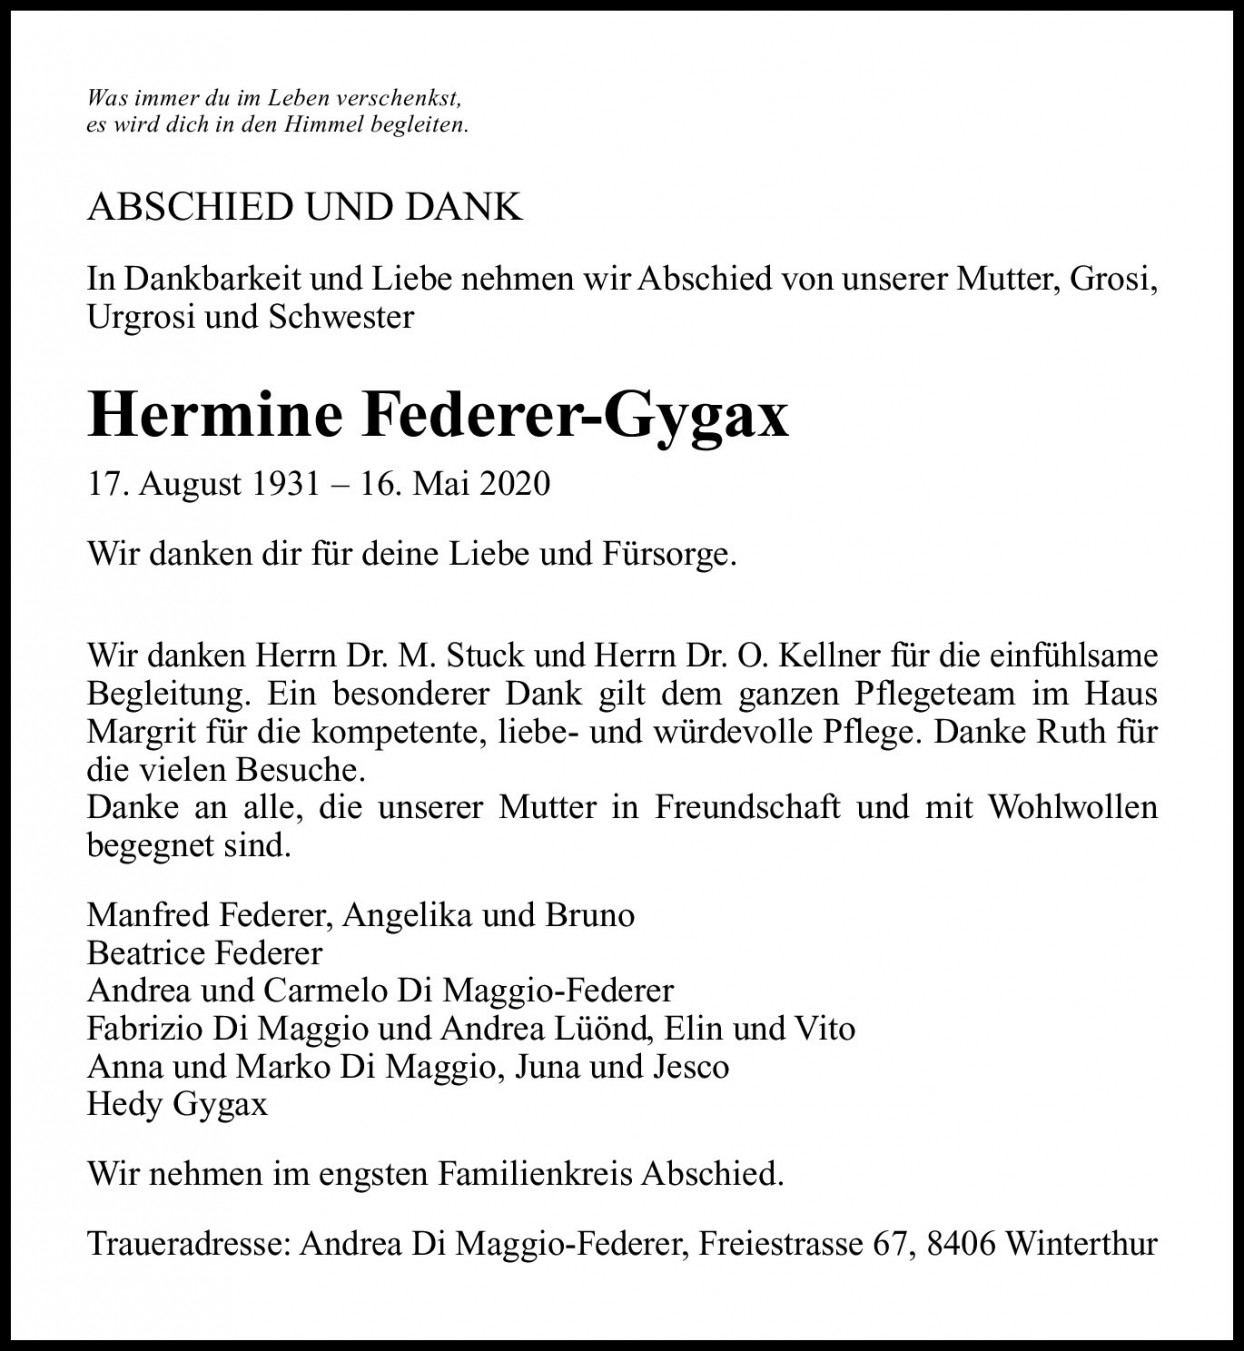 Hermine Federer-Gygax